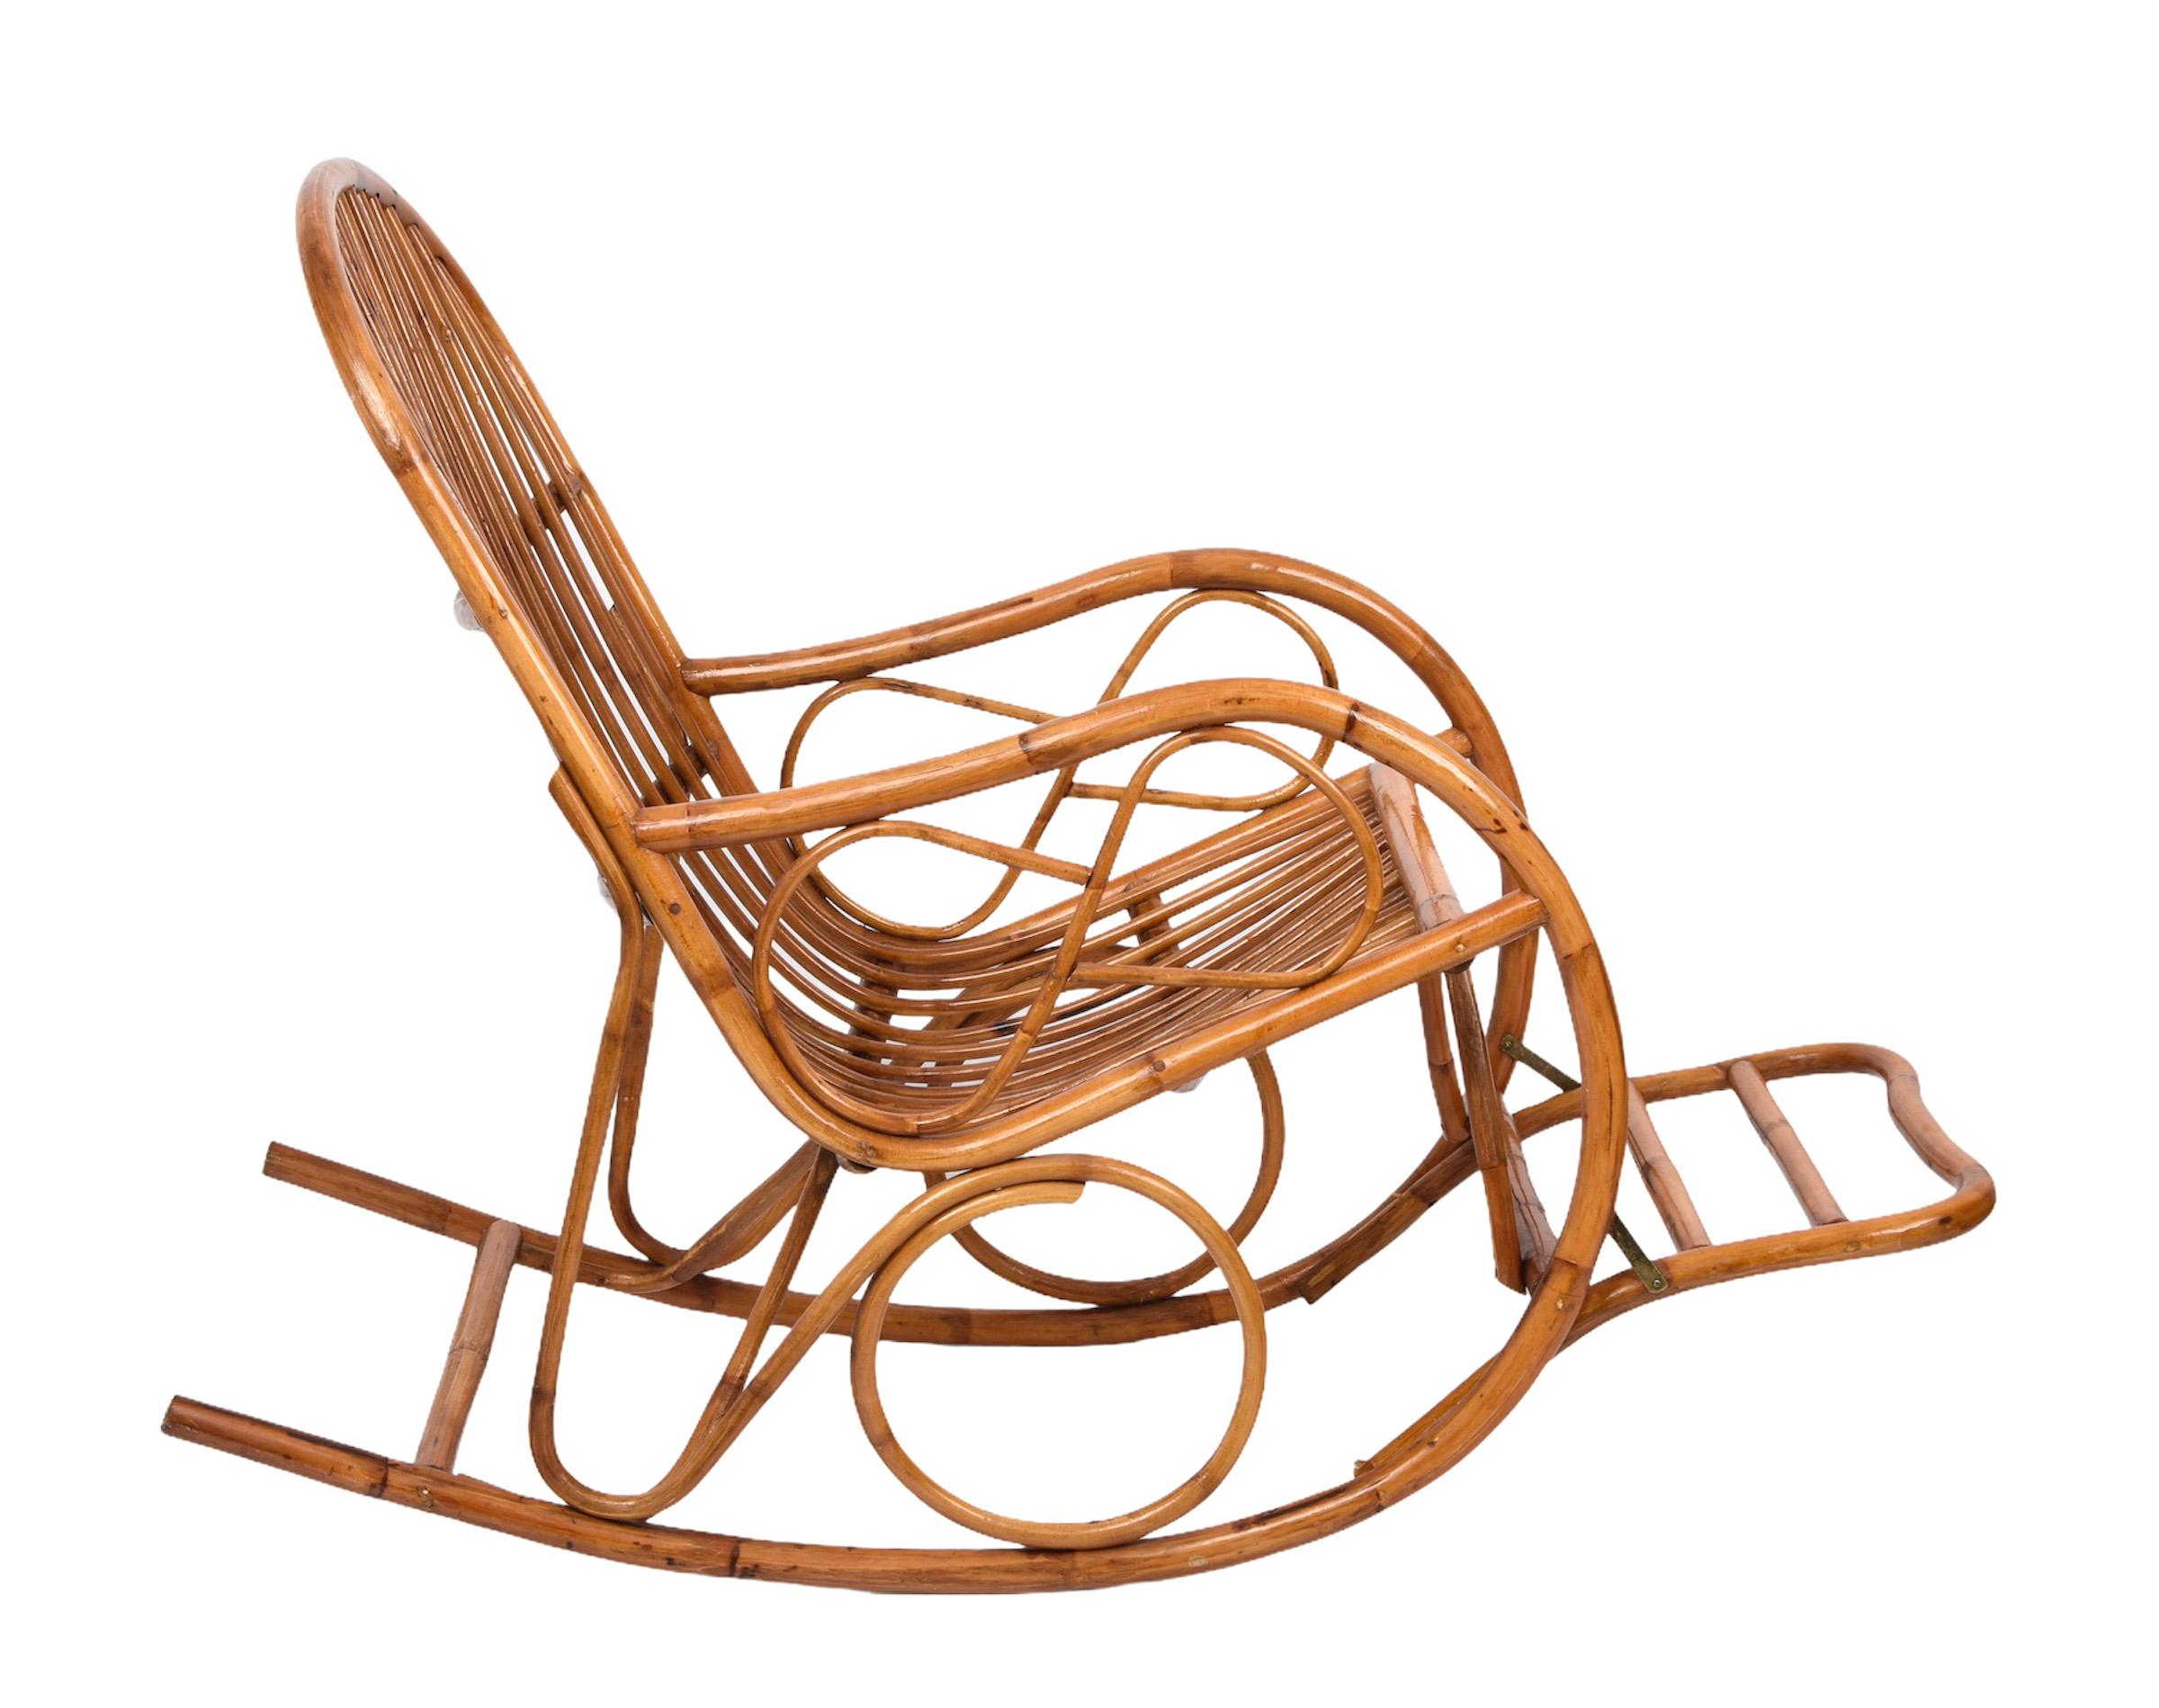 Elegant fauteuil à bascule midcentury French Riviera avec pouf en rotin et bambou. Cette pièce fantastique a été conçue et fabriquée en Italie dans les années 1970.

Cette chaise est unique parce qu'elle a des proportions parfaites et est très